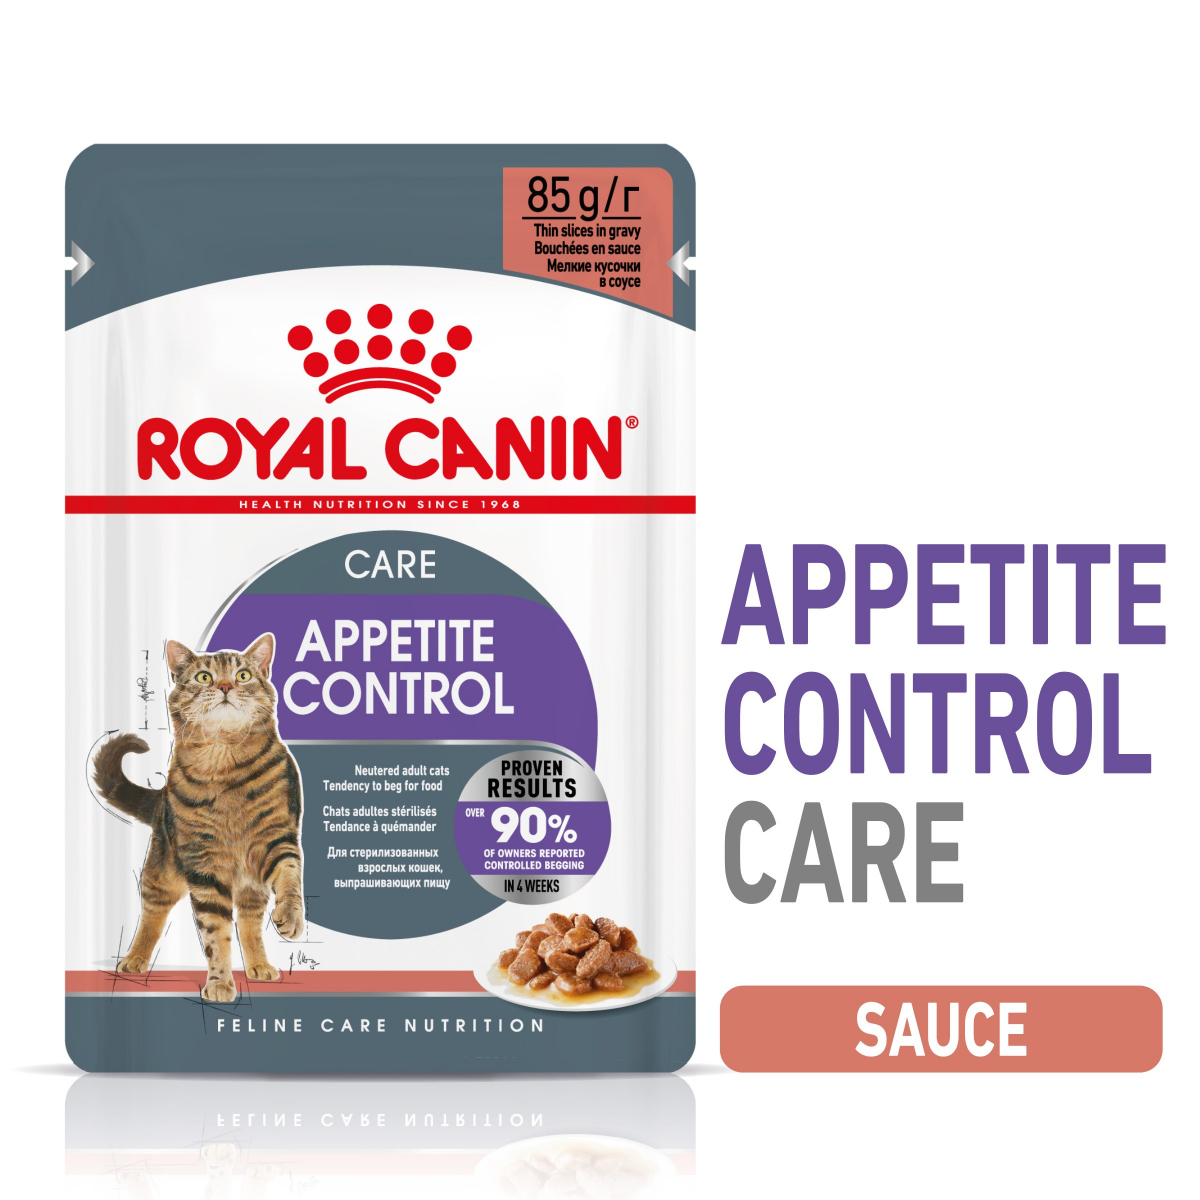 Royal Canin Urinary S/O Mousse/Paté 12x85g - Boites, pâtées et sachets Chat  - Croquettes & alimentation Royal Canin Veterinary Diet